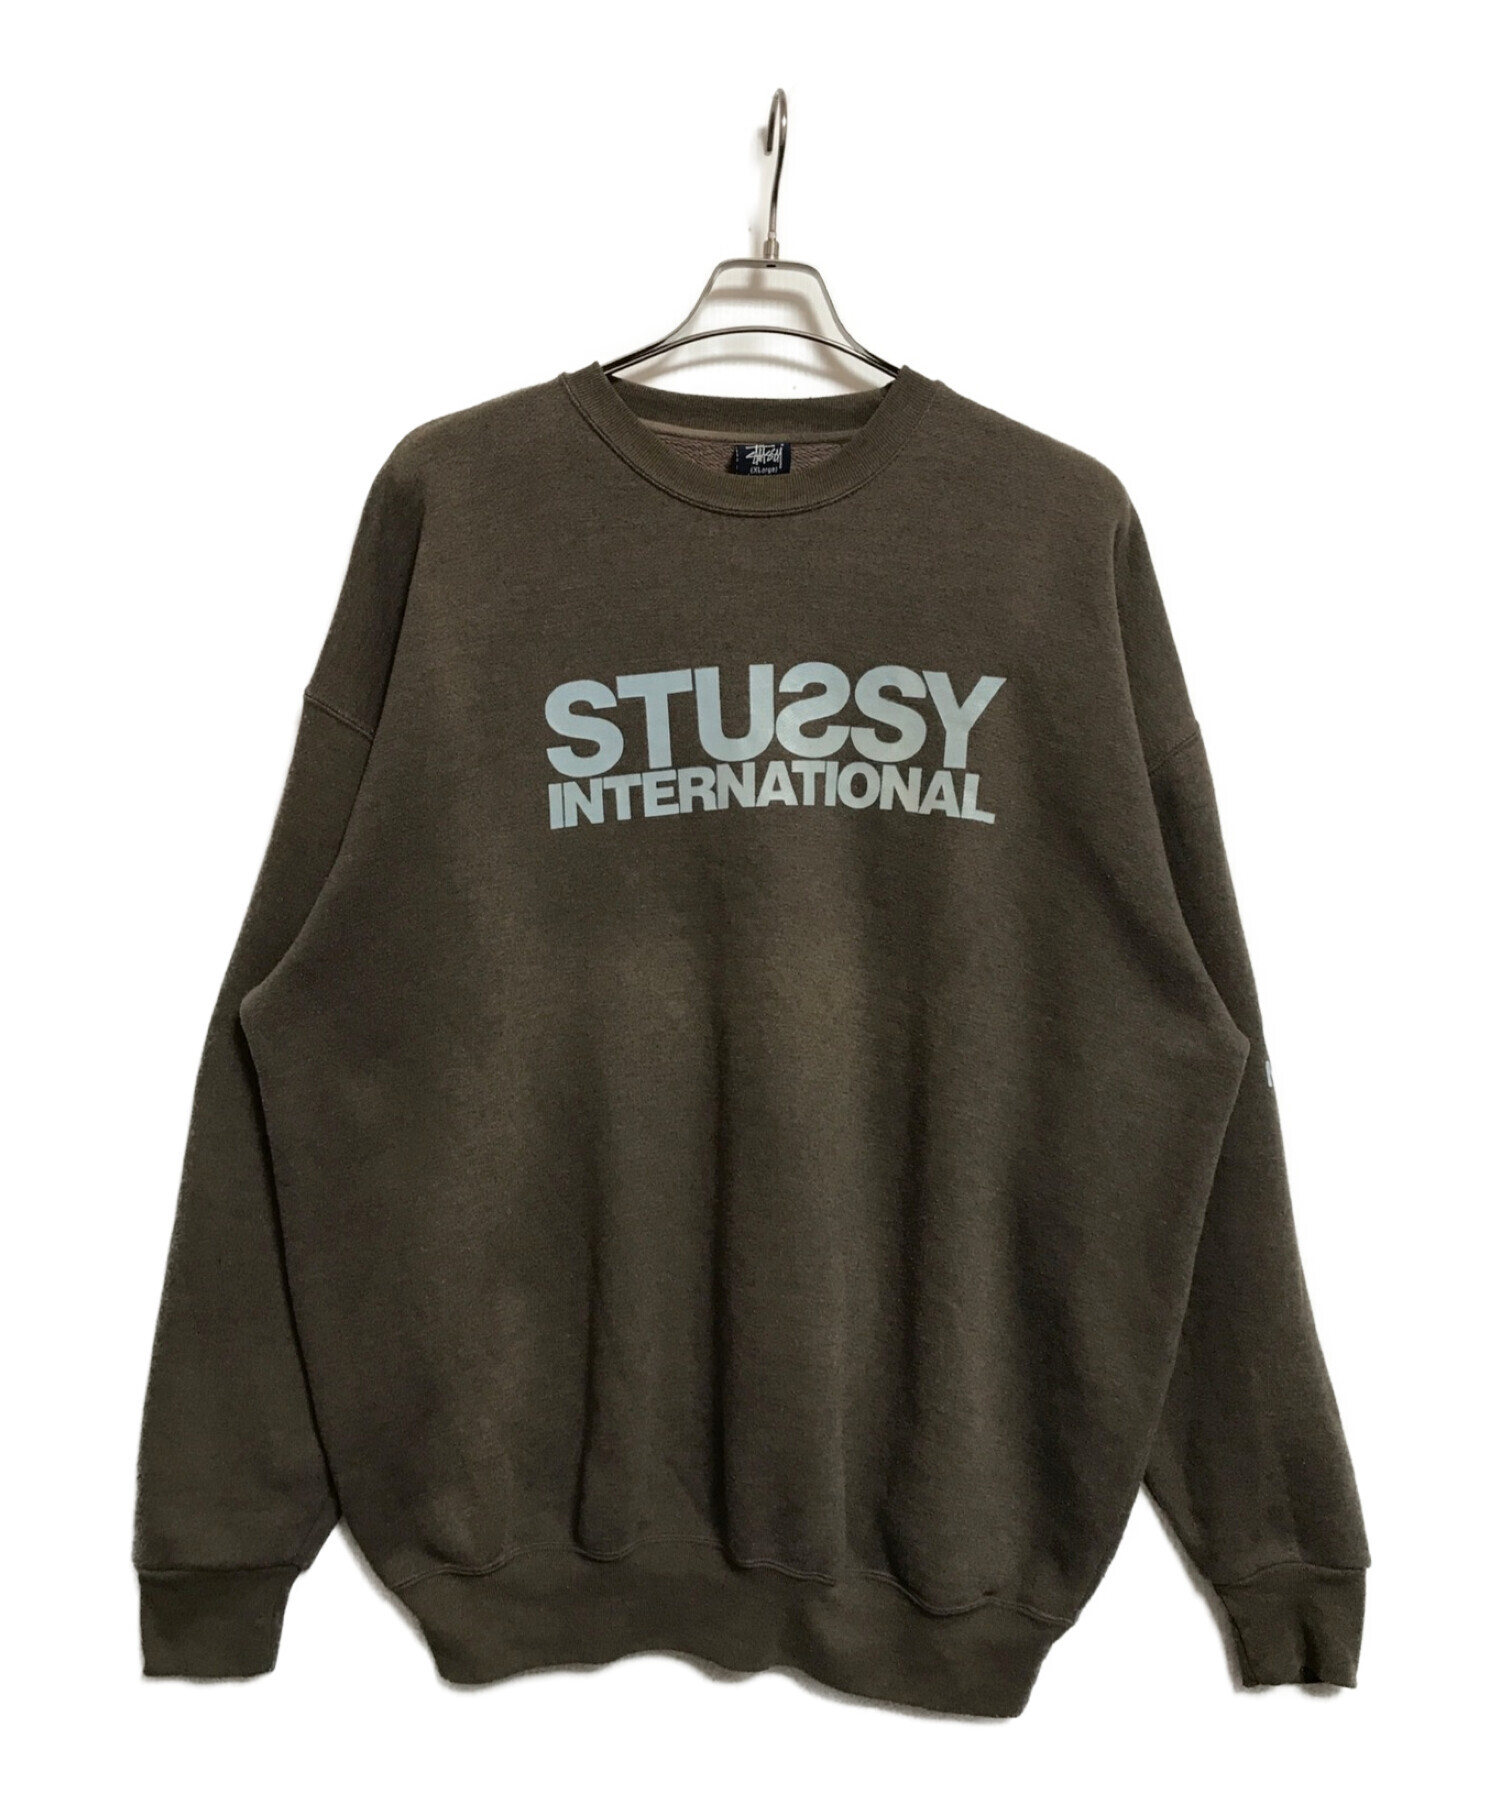 stussy (ステューシー) 90‘Sクルーネックスウェット ブラウン サイズ:XL